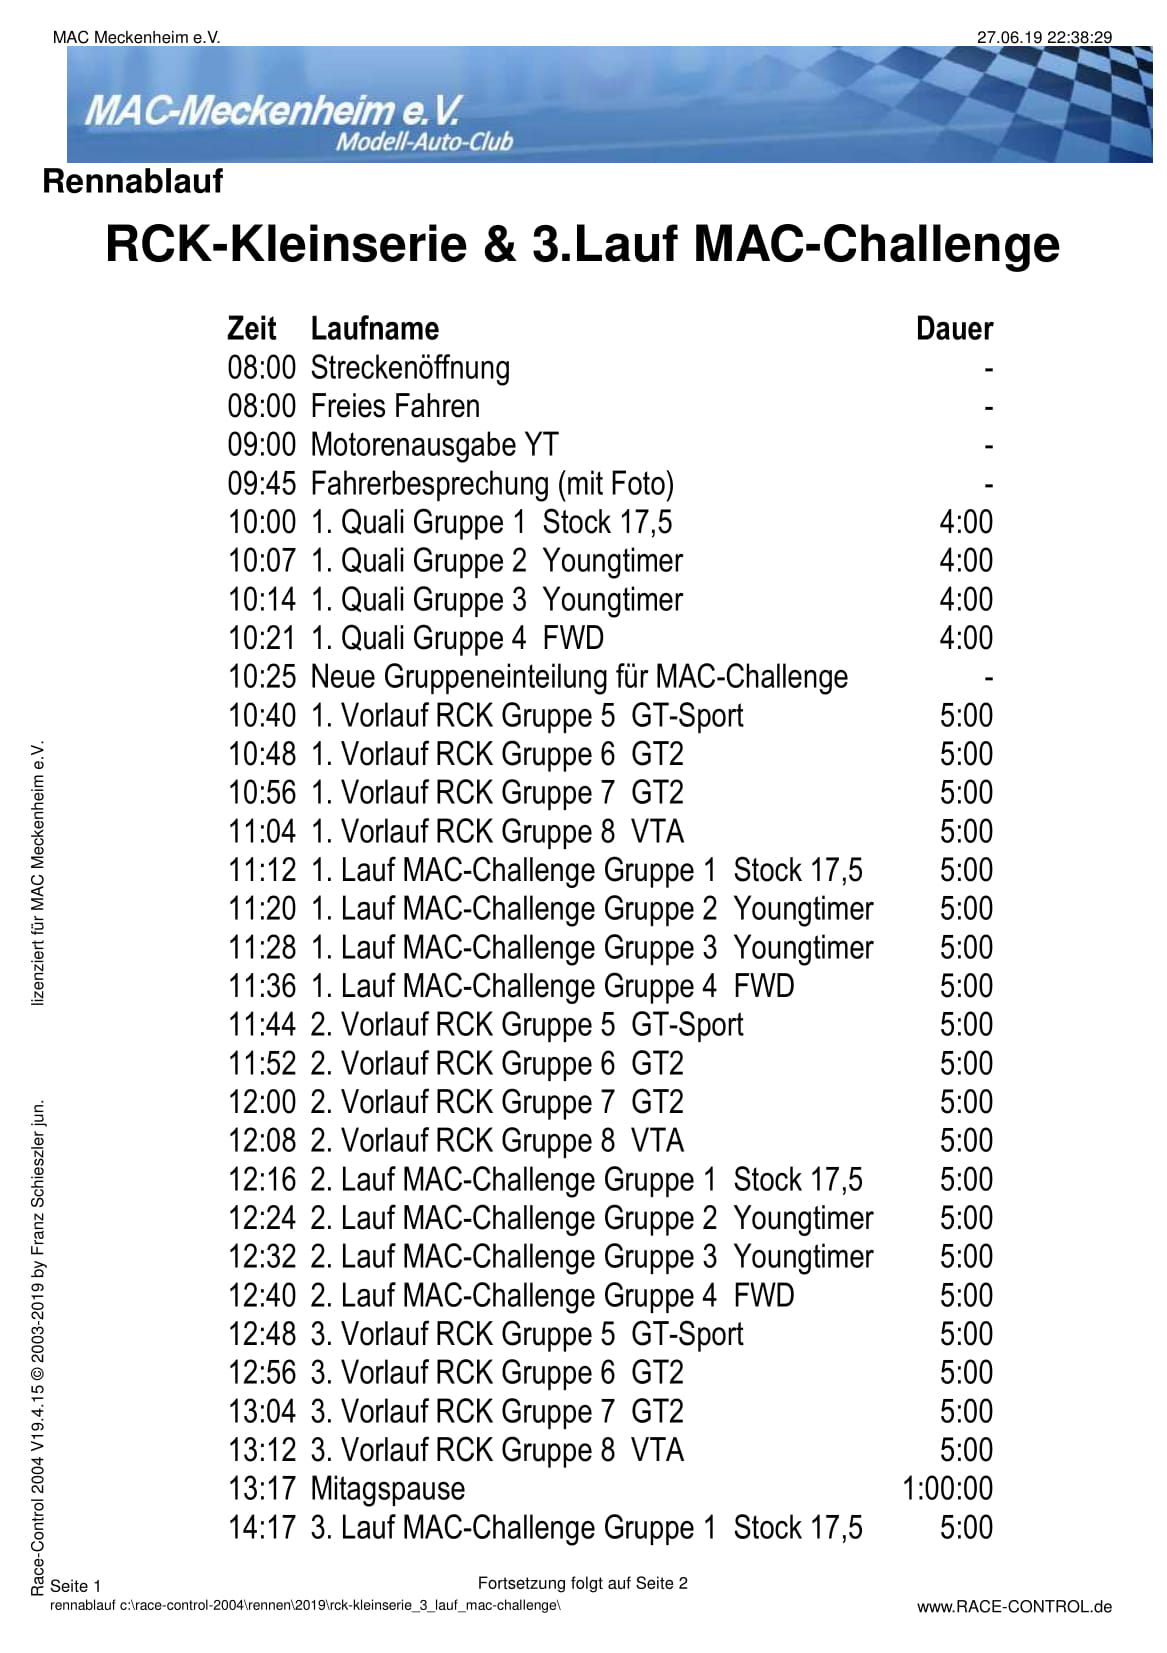 Zeitplan RCK-KleinSerie & 3. Lauf MAC-Challenge